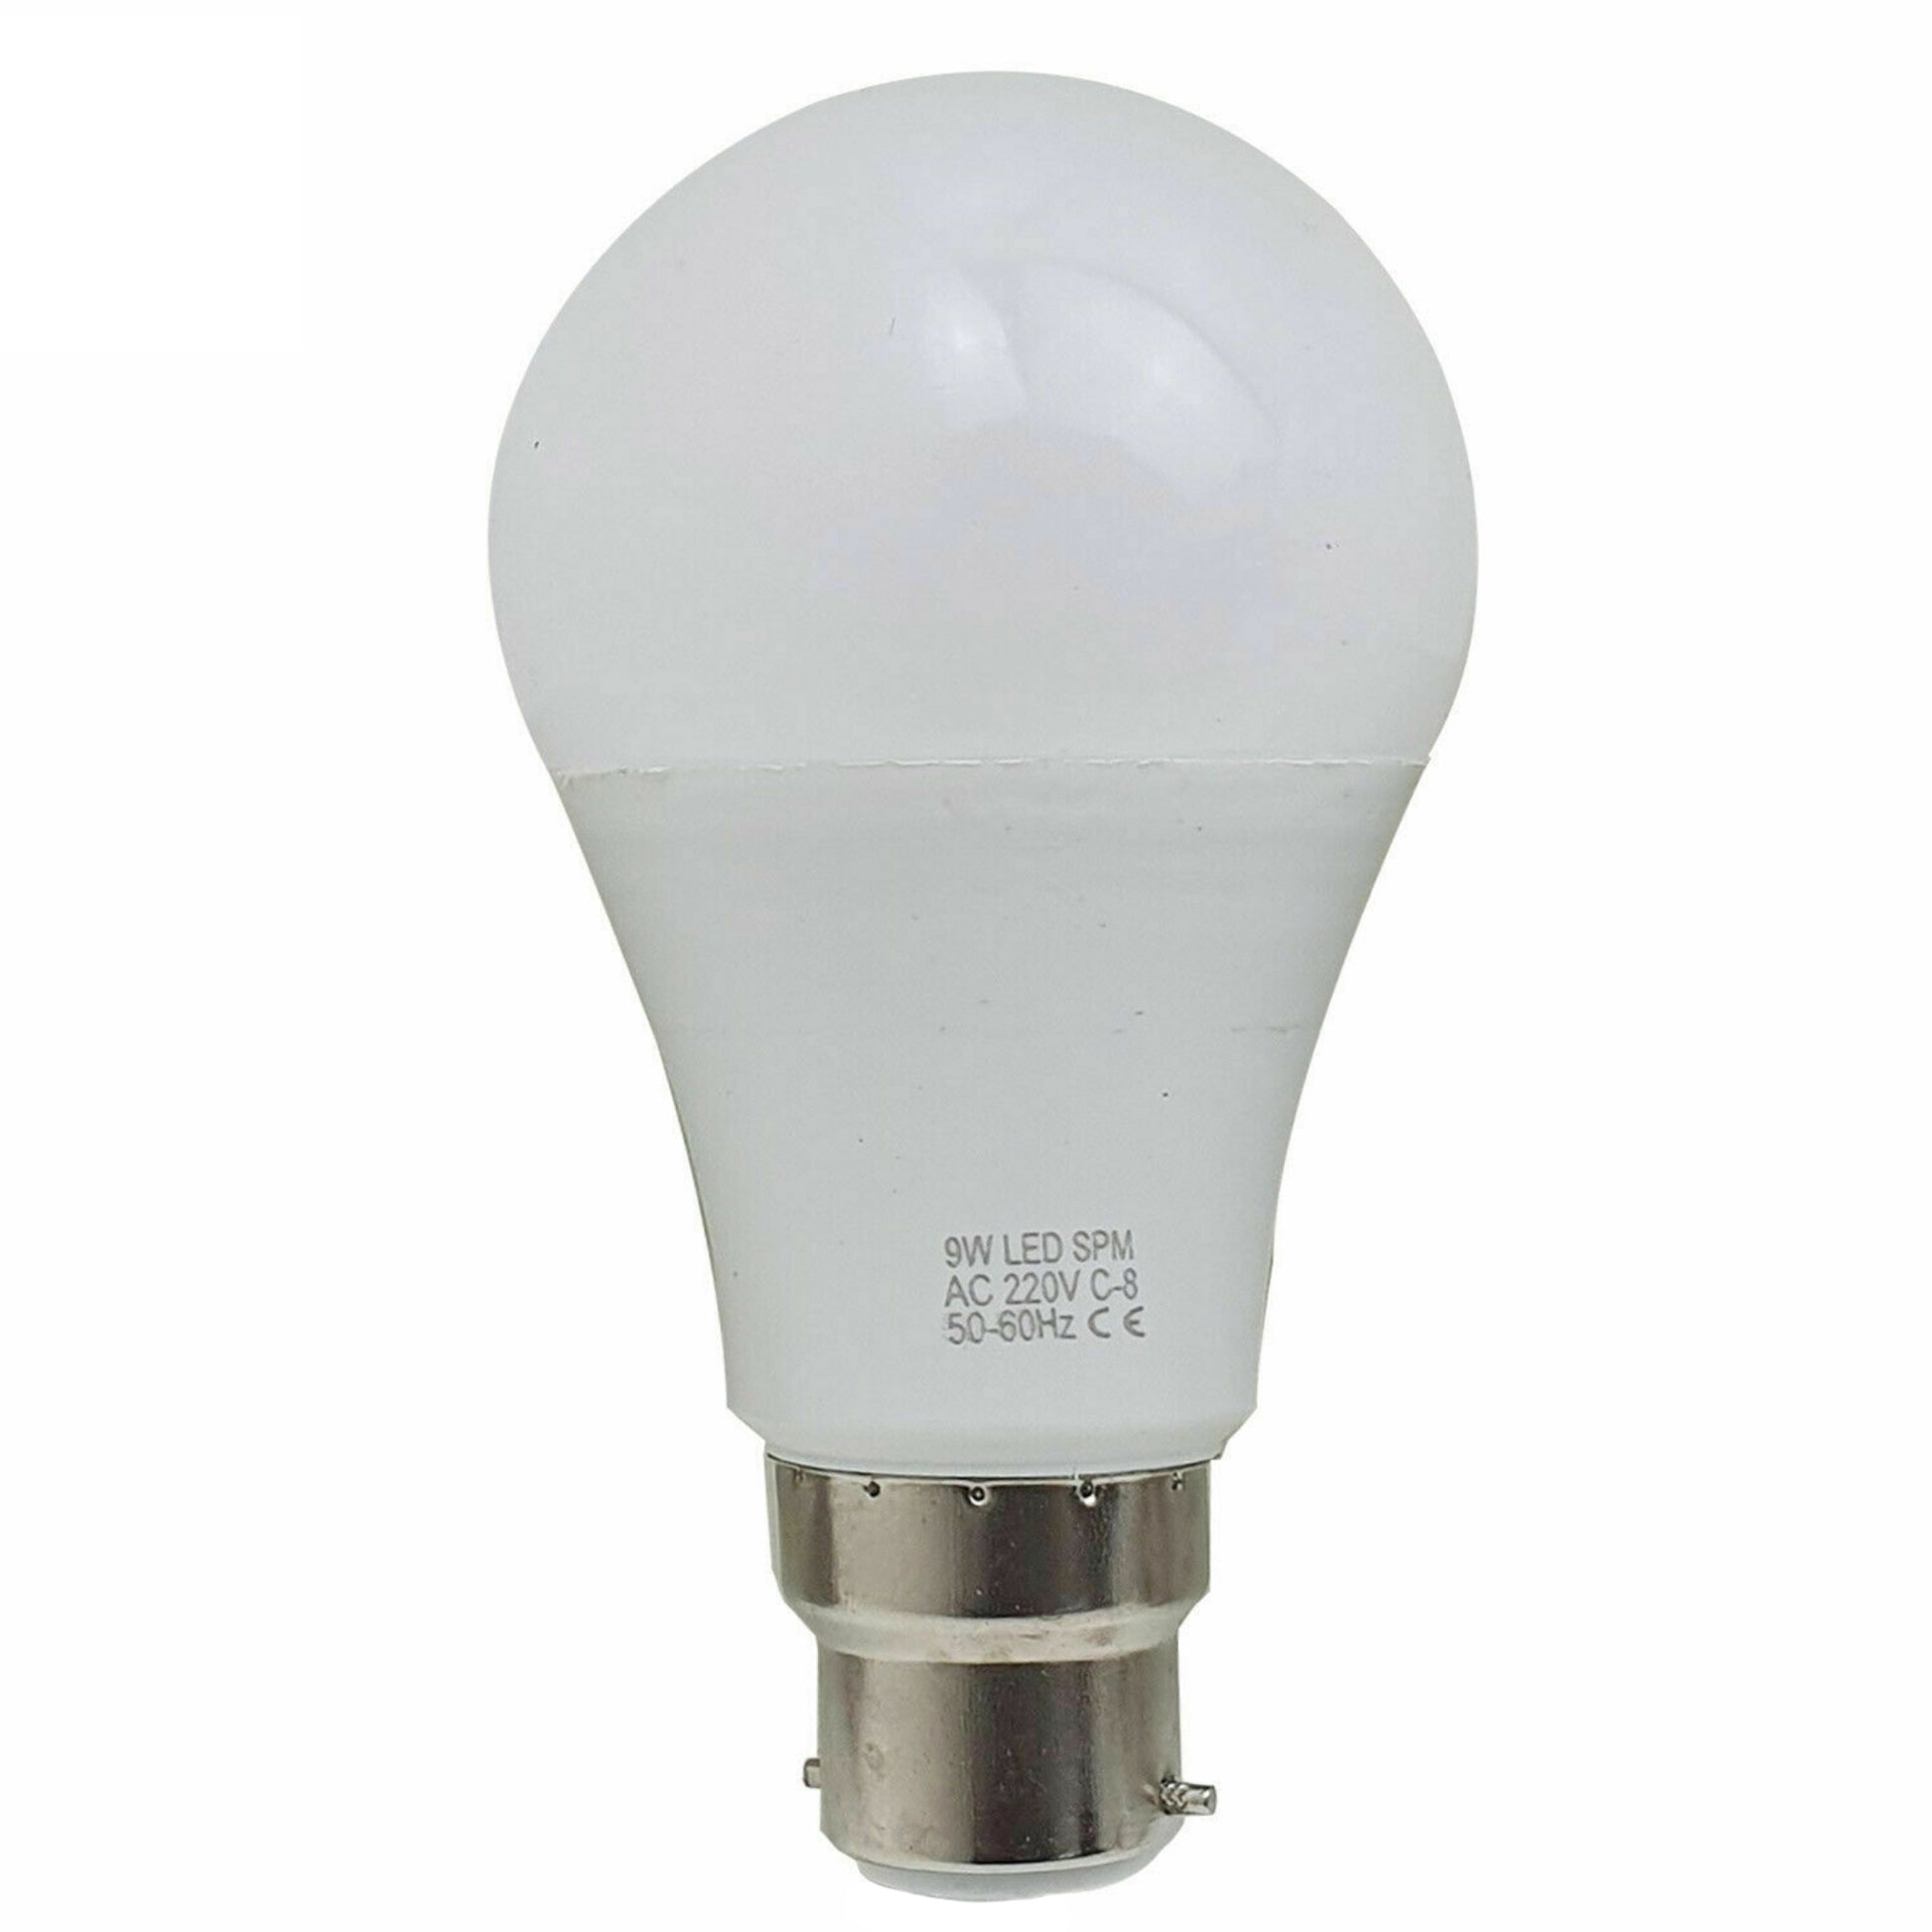 B22 9 W energiesparende warmweiße LED-Glühbirnen A60 B22 Schraubbirnen, nicht dimmbar